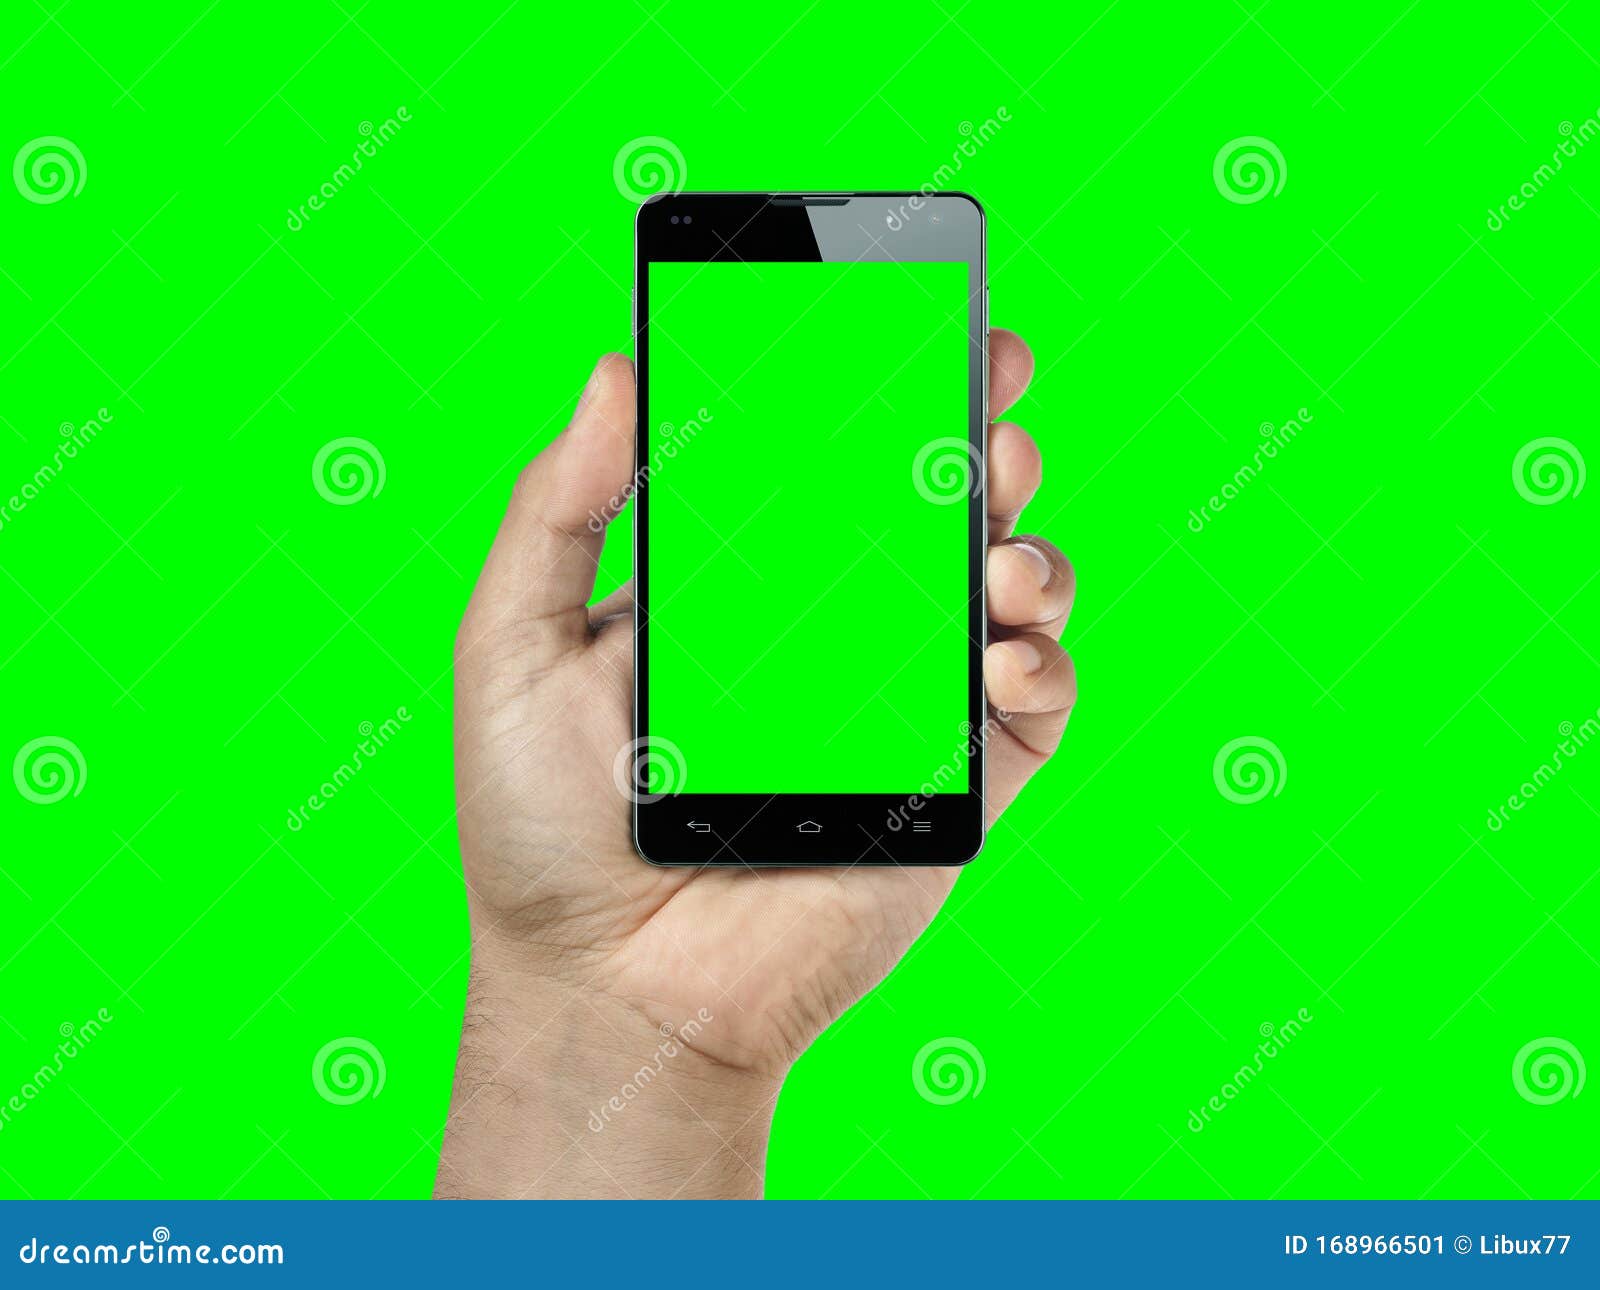 Với Green screen mobile or smartphone editor, bạn không chỉ có thể chỉnh sửa và sáng tạo ảnh của mình một cách chuyên nghiệp mà còn có thể thể hiện các nội dung và thông điệp của mình một cách tốt nhất. Hãy bắt tay vào sáng tạo ngay hôm nay nào!